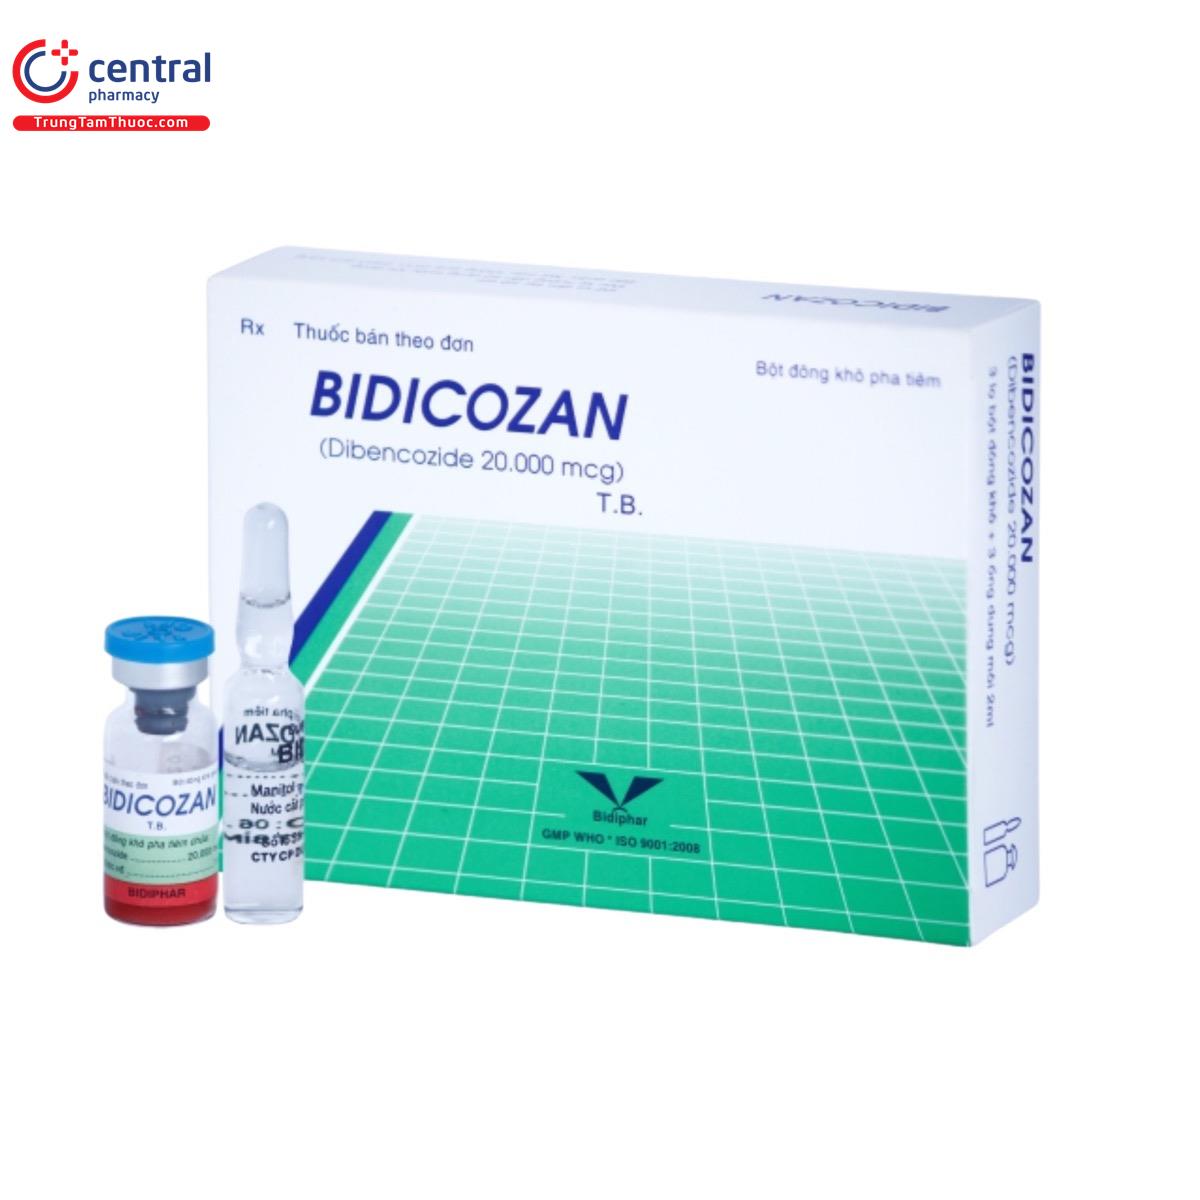 bidicozan 1 C0021